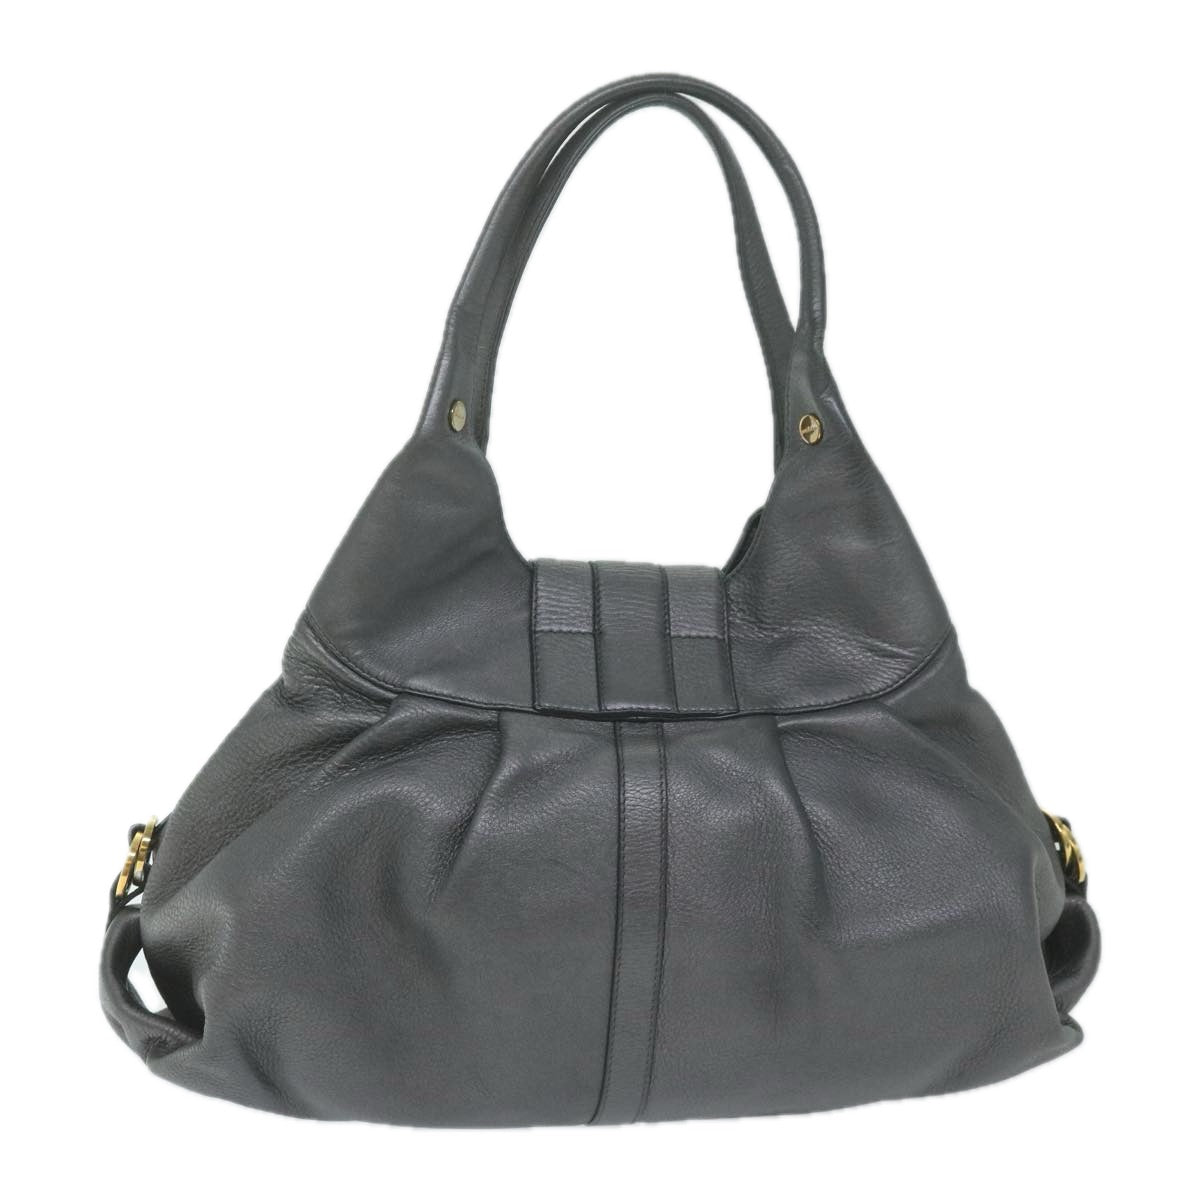 BVLGARI Chandra Hand Bag Leather Gray Auth 64348 - 0